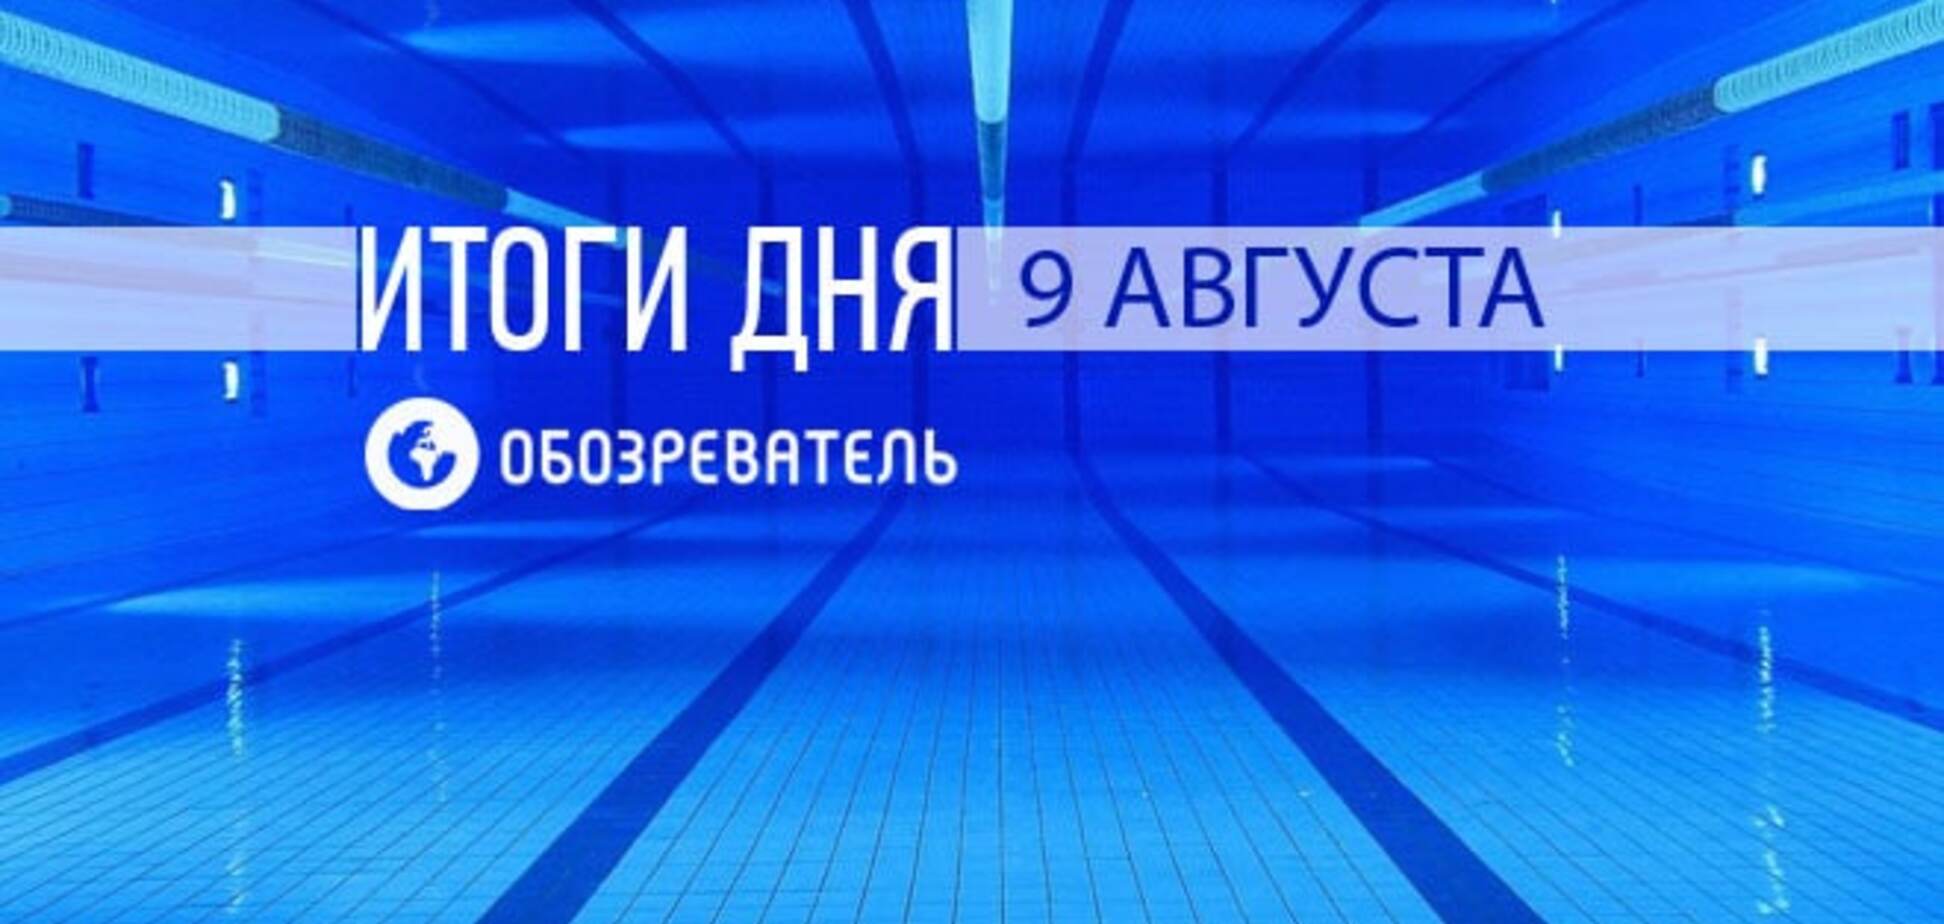 Украинская гимнастка вырвала 'золото' у россиянки. Спортивные итоги 9 августа